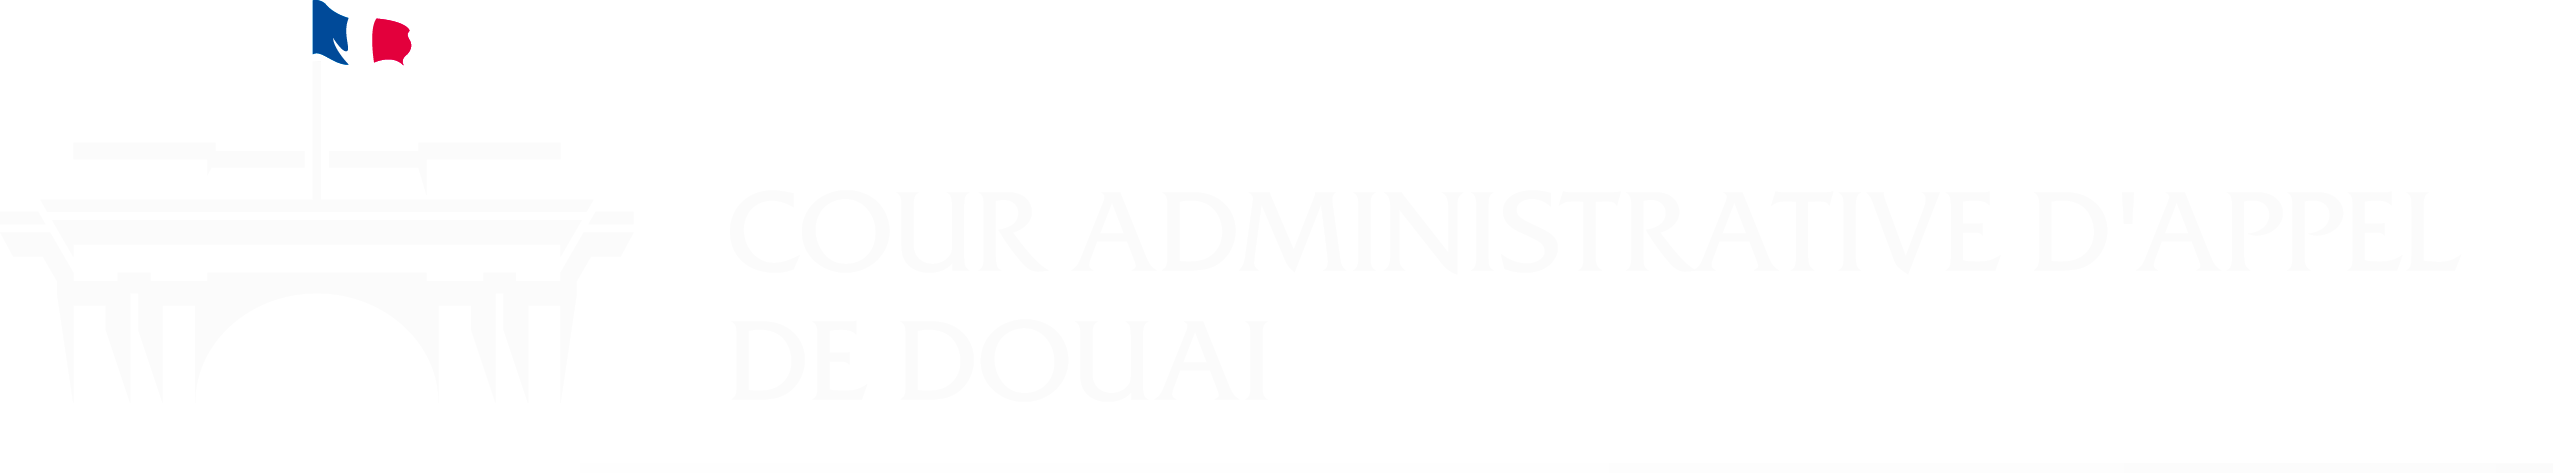 Logo Cour administrative d'appel de Douai